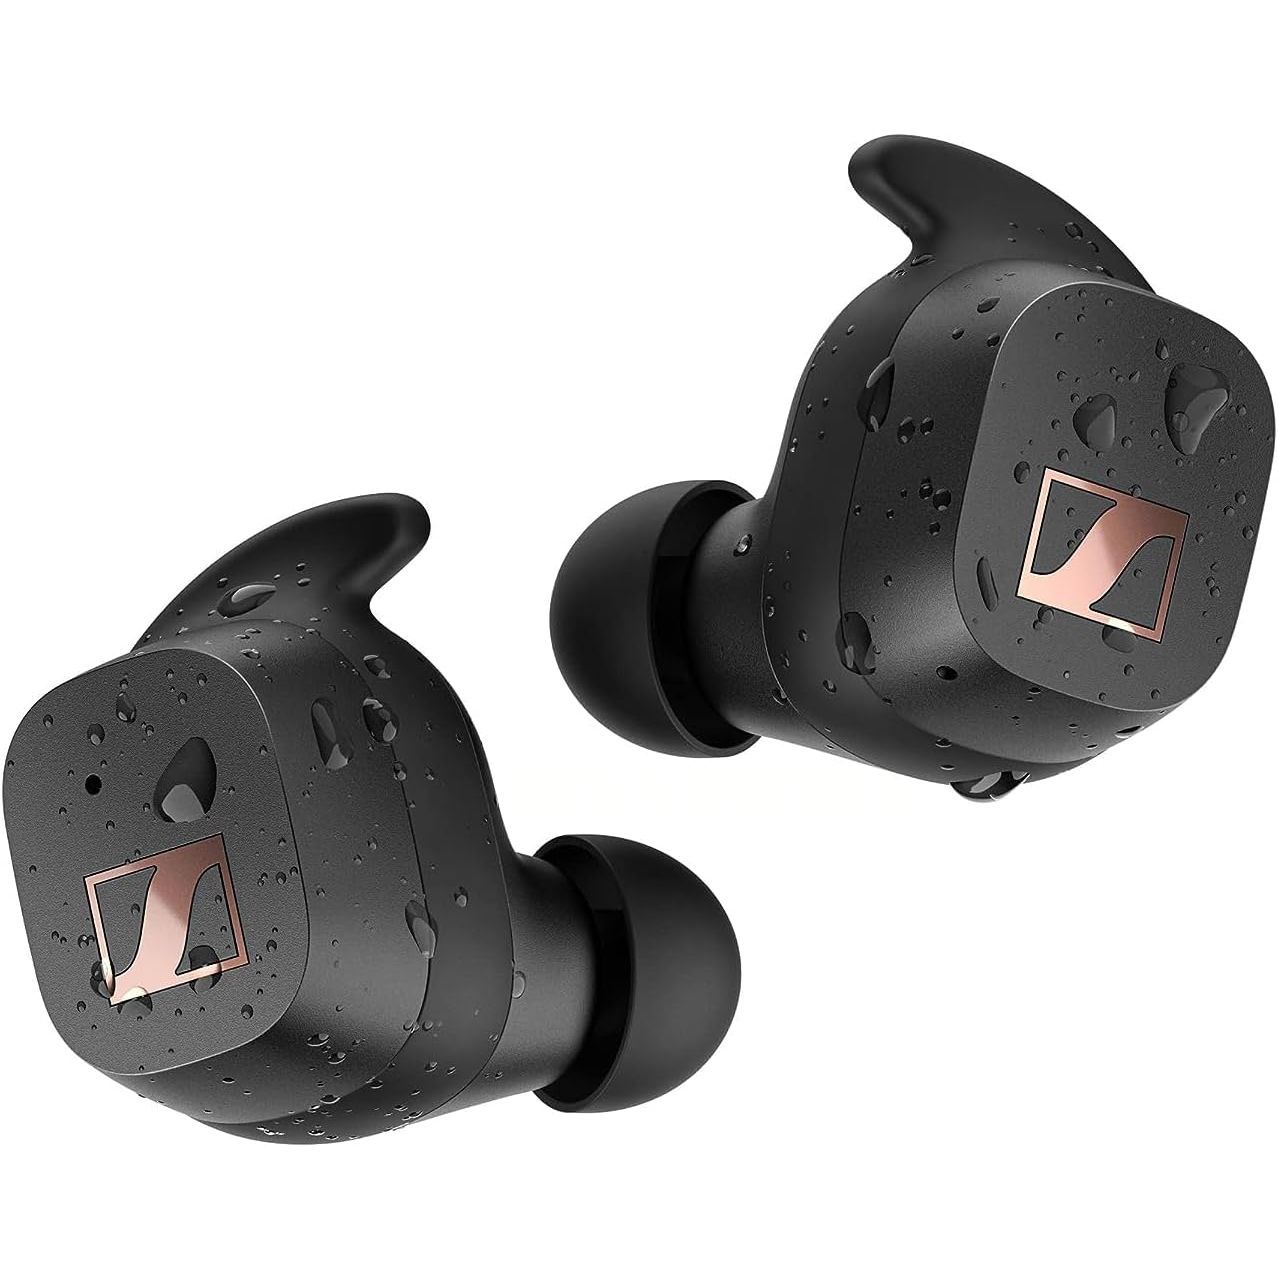 Fones de ouvido sem fio verdadeiros Sennheiser Sport para treinos retratados com gotas de água para comunicar a impermeabilidade